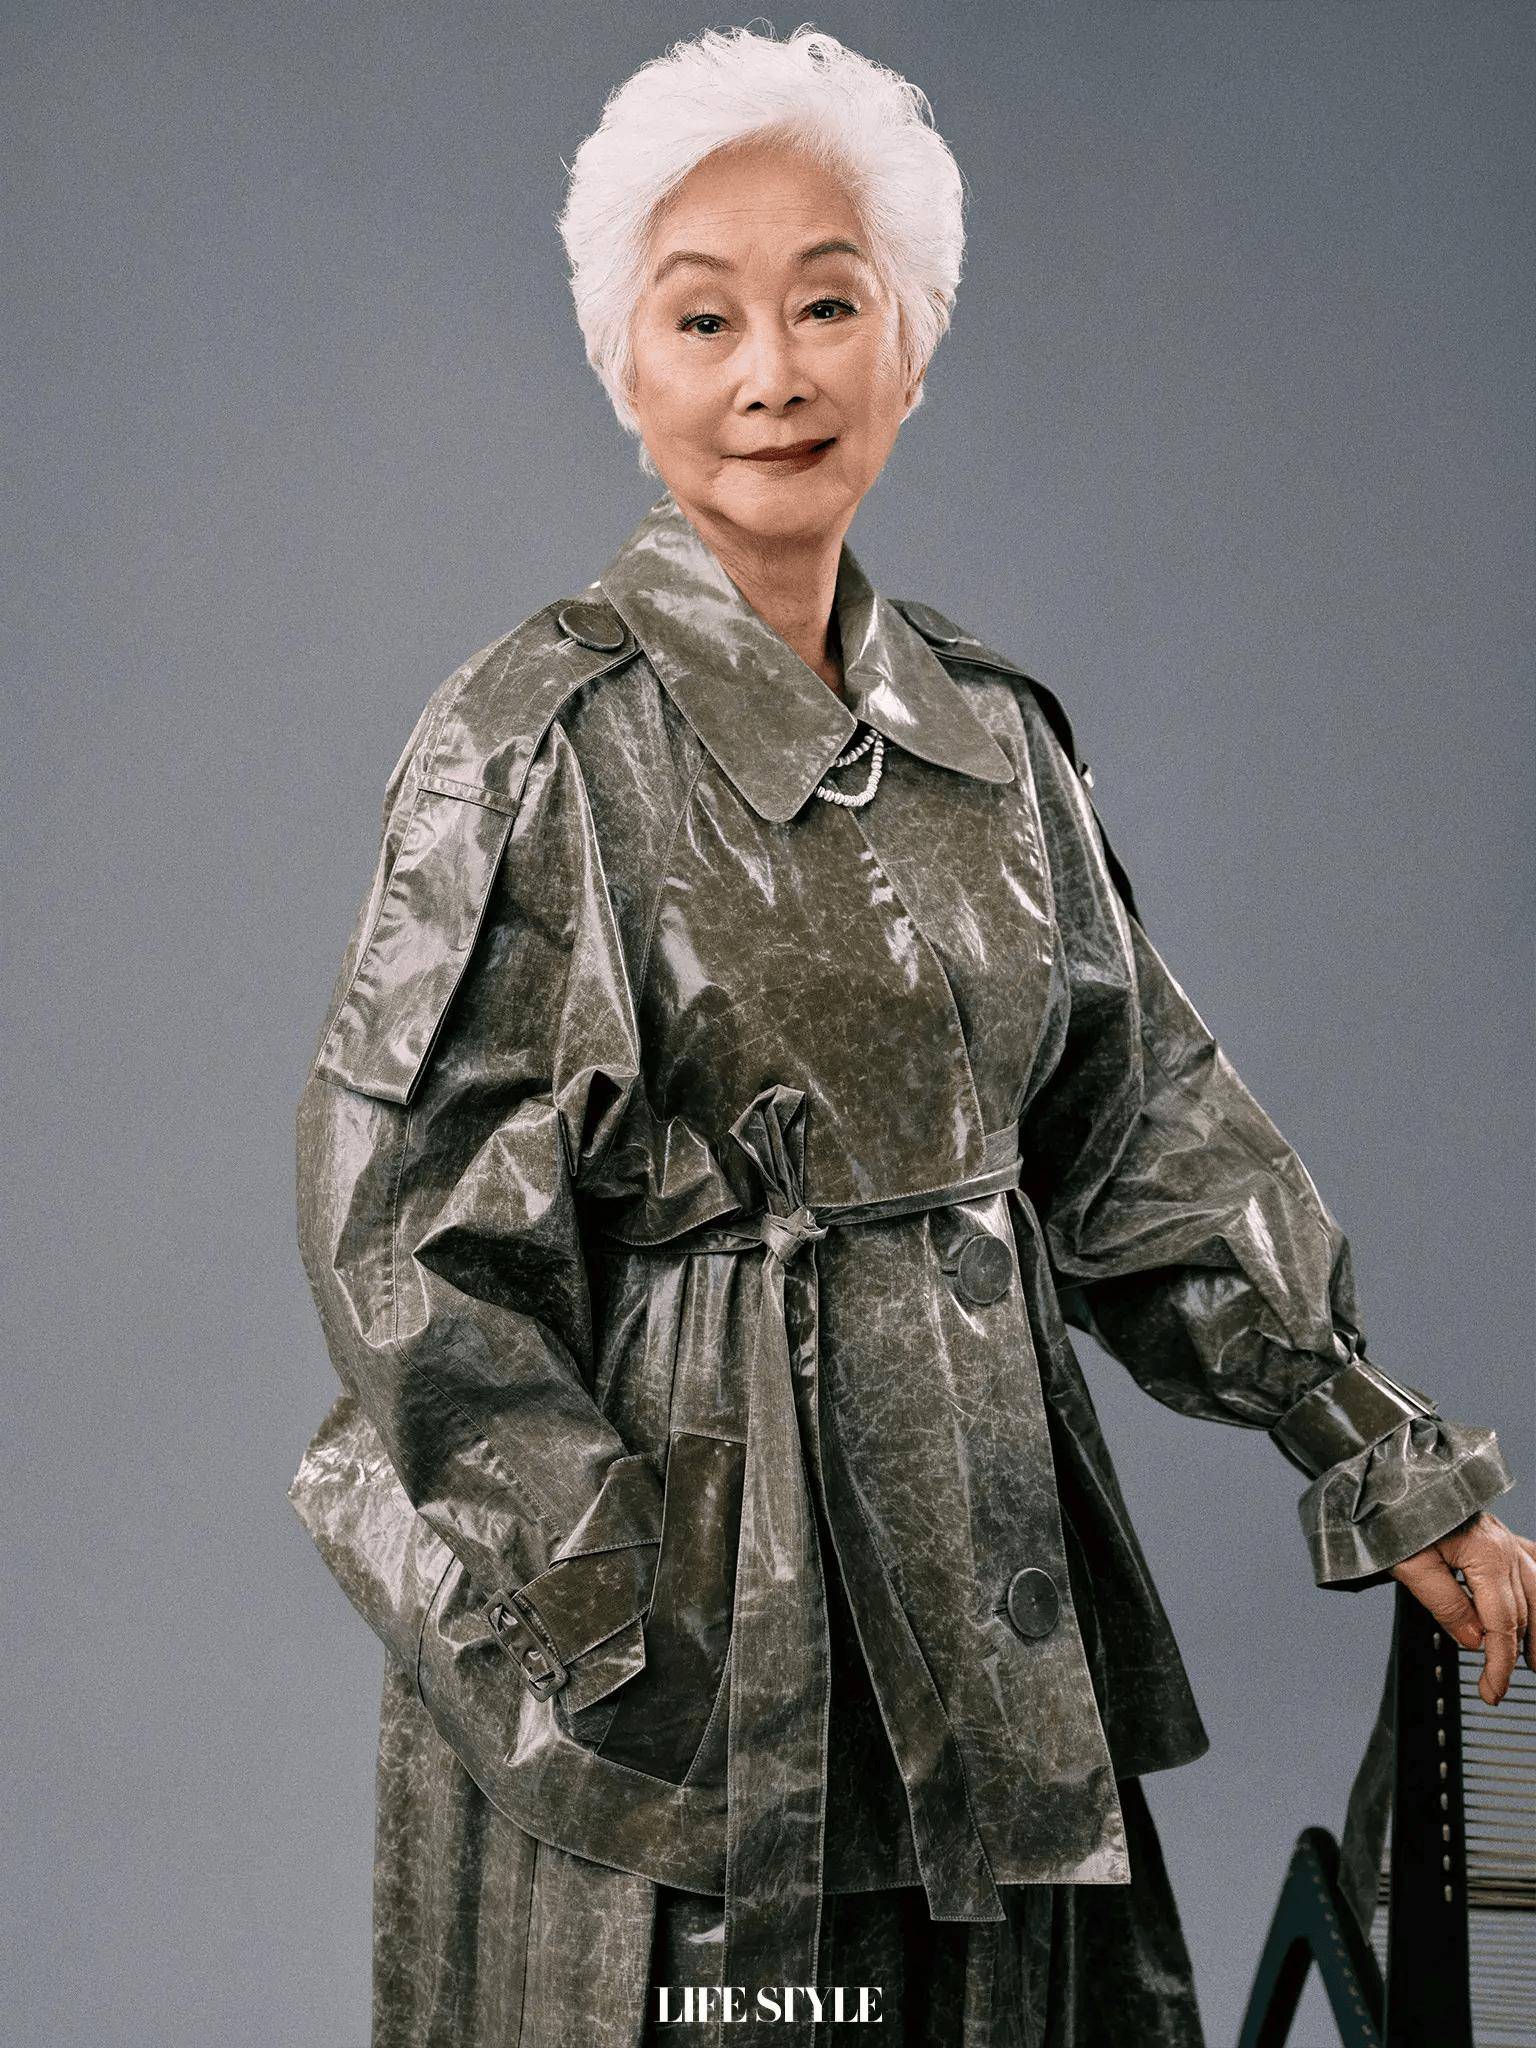 97岁卢燕最新杂志封面,穿蓝色皮草雍容华贵,尽显东方韵味